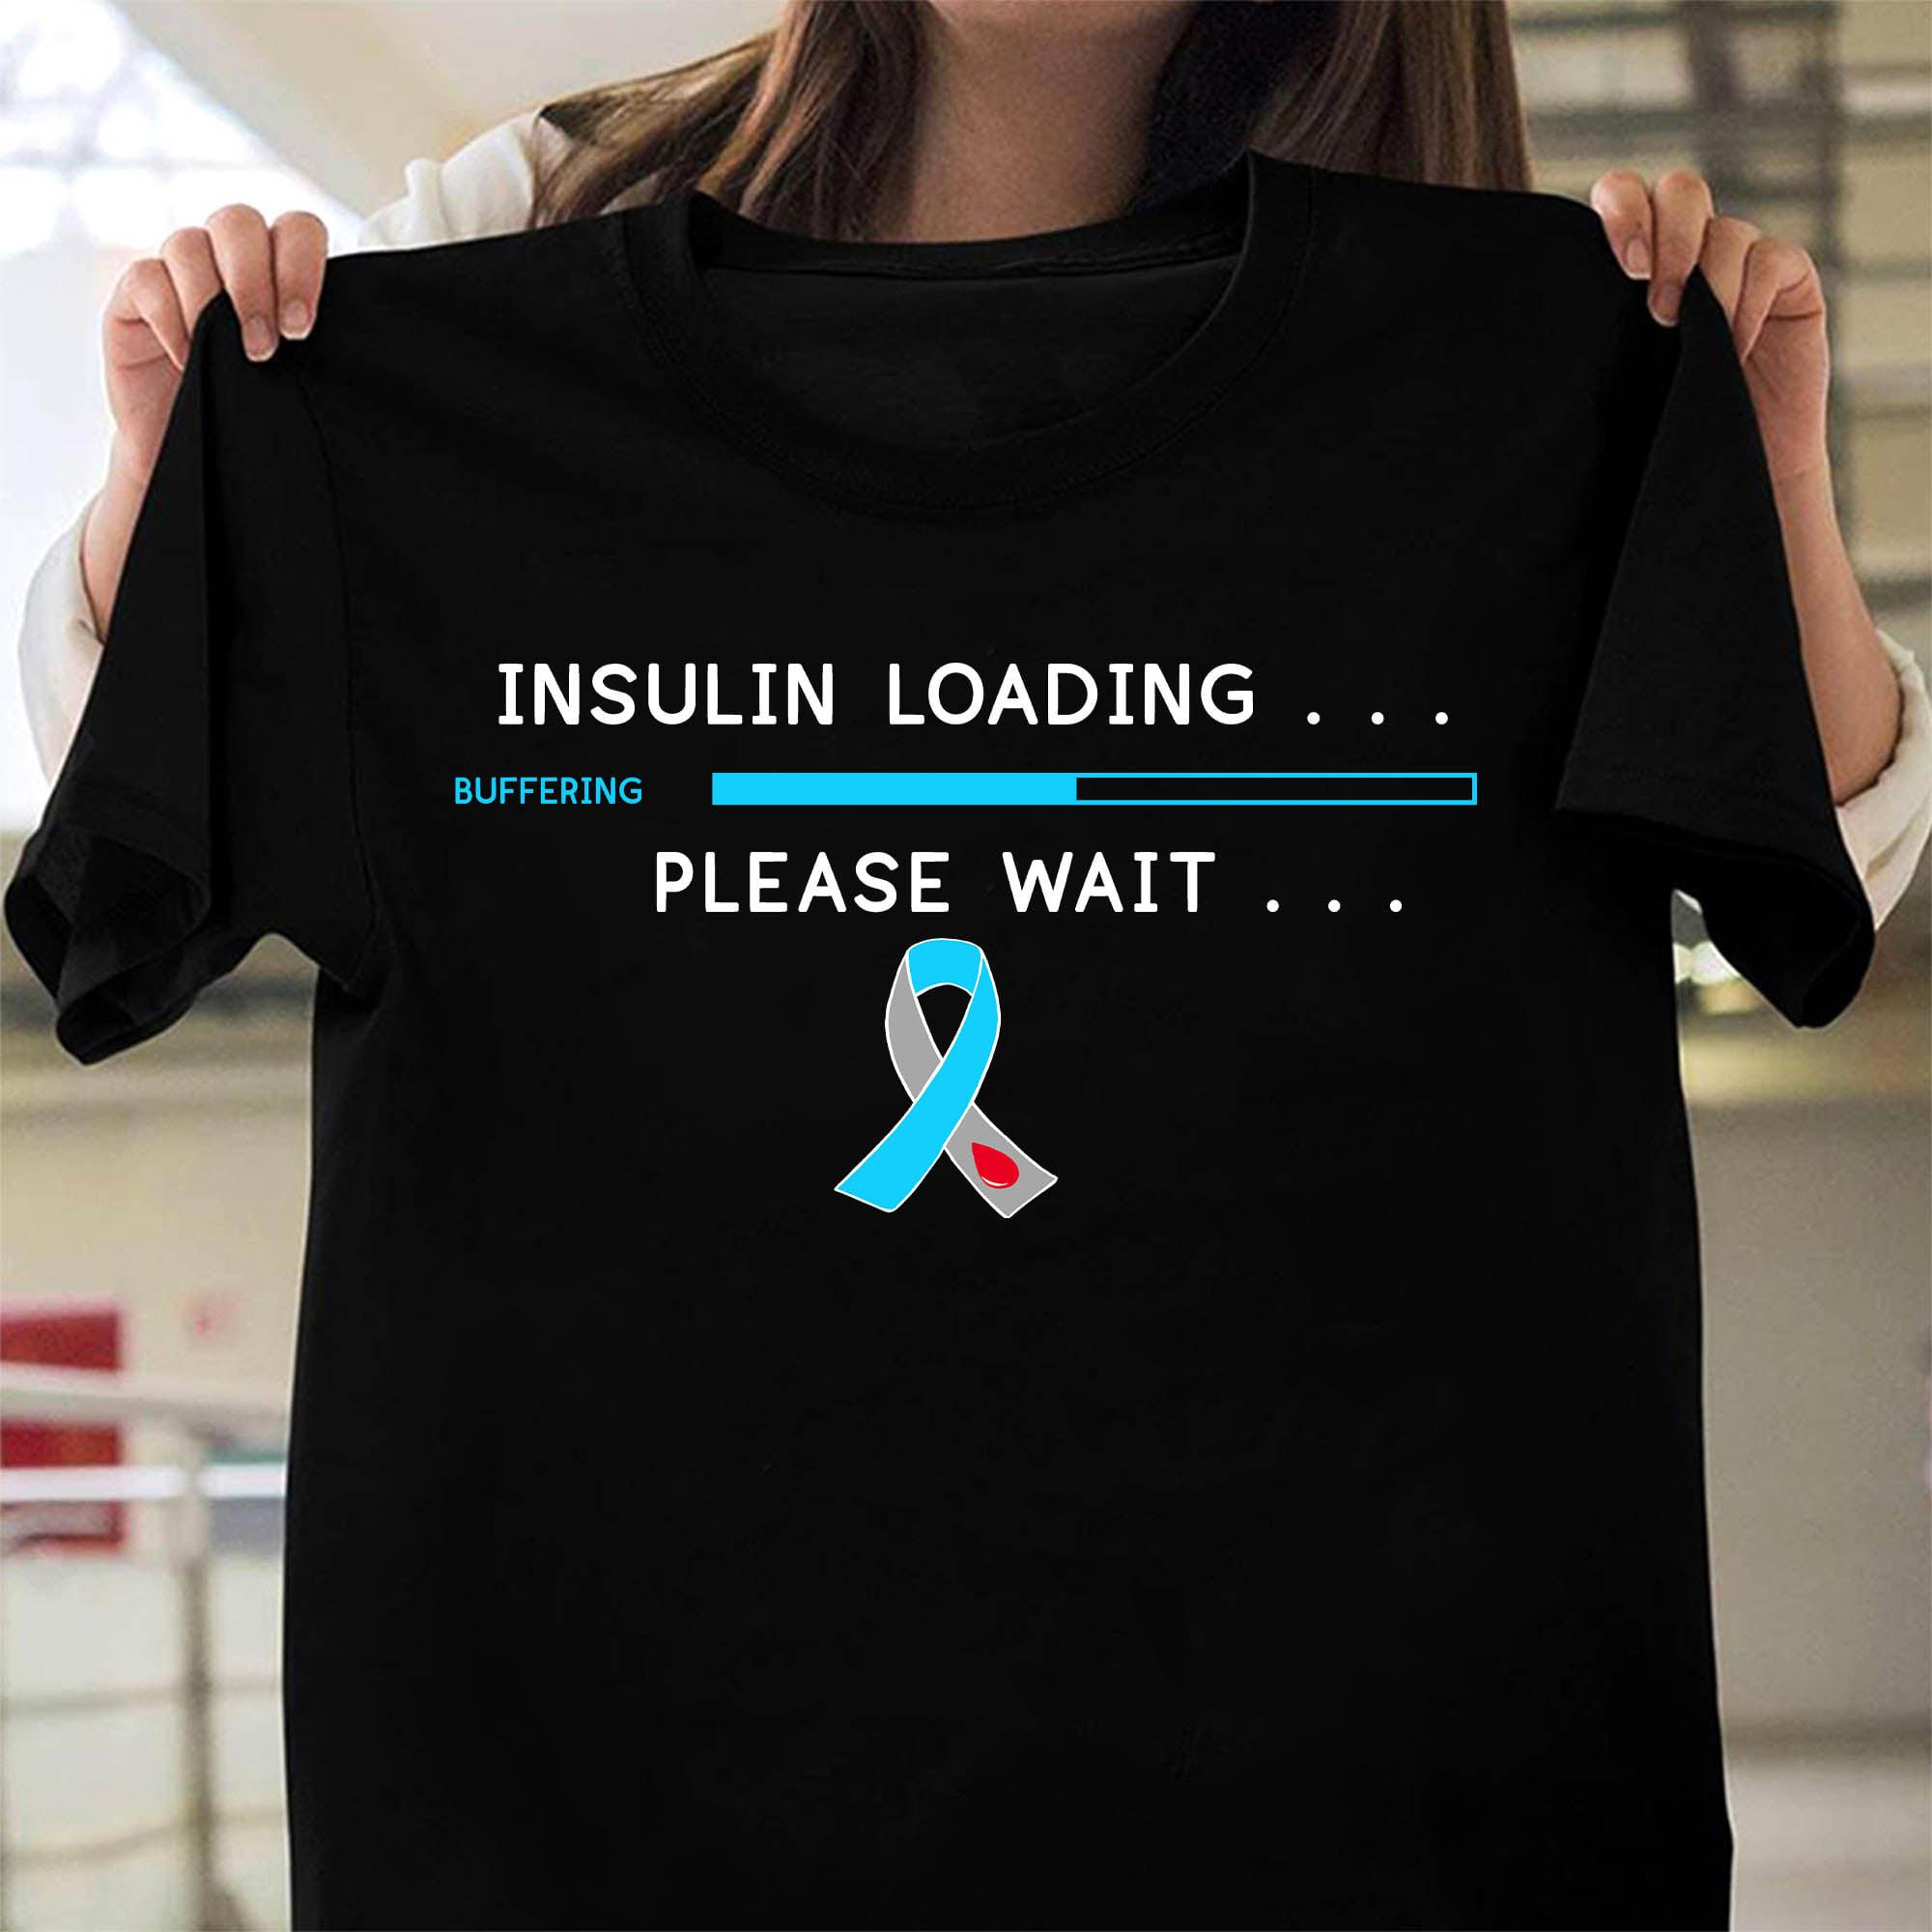 Insulin loading please wait - Insulin buffering, Diabetes awareness